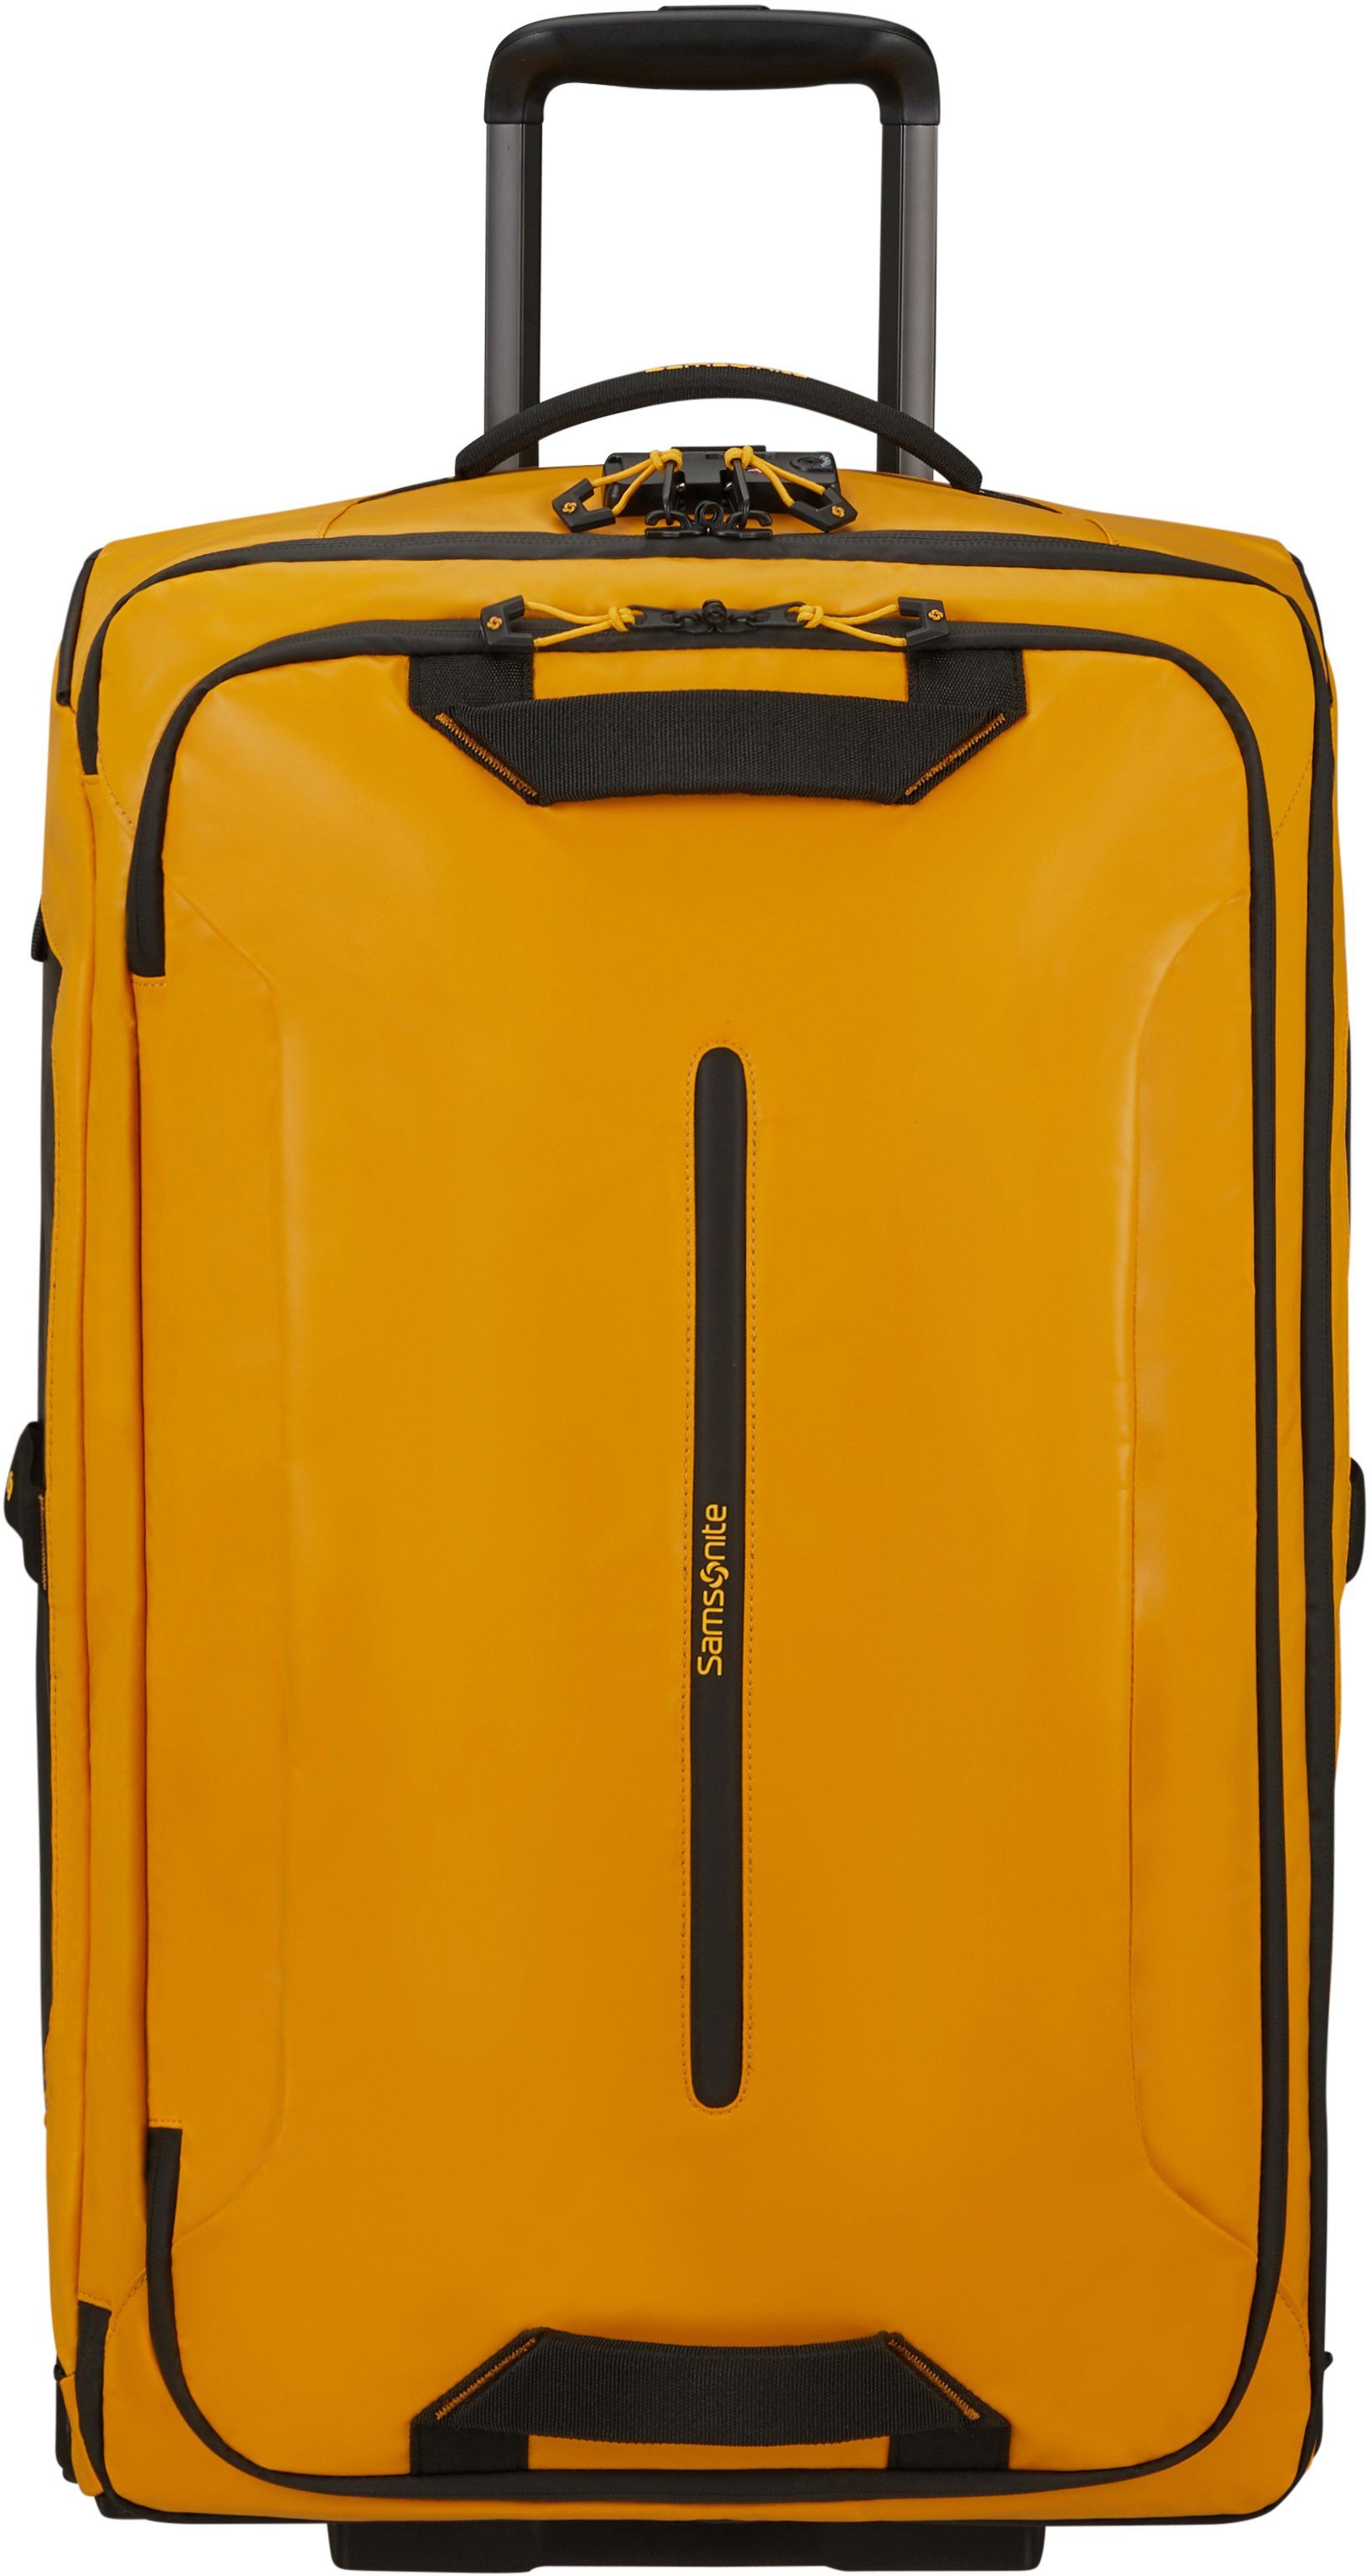 Samsonite Weichgepäck-Trolley Ecodiver, 67 cm, 2 Rollen, teilweise aus recyceltem Material Yellow